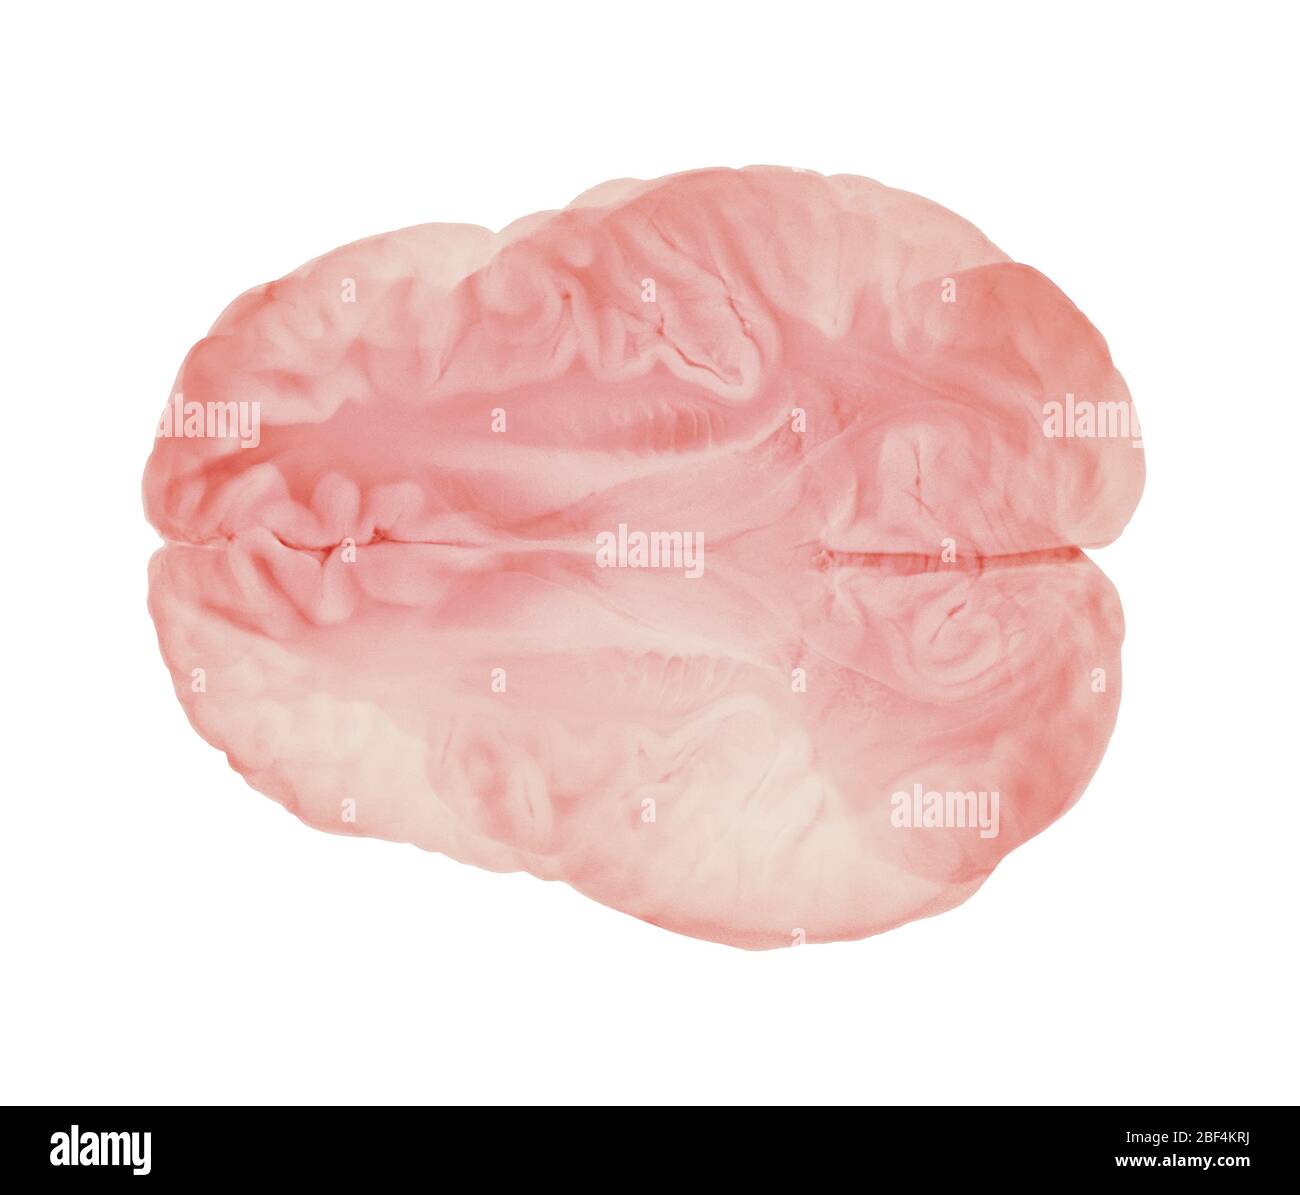 Sezione orizzontale attraverso emisferi cerebrali. Anatomia cerebrale umana Foto Stock